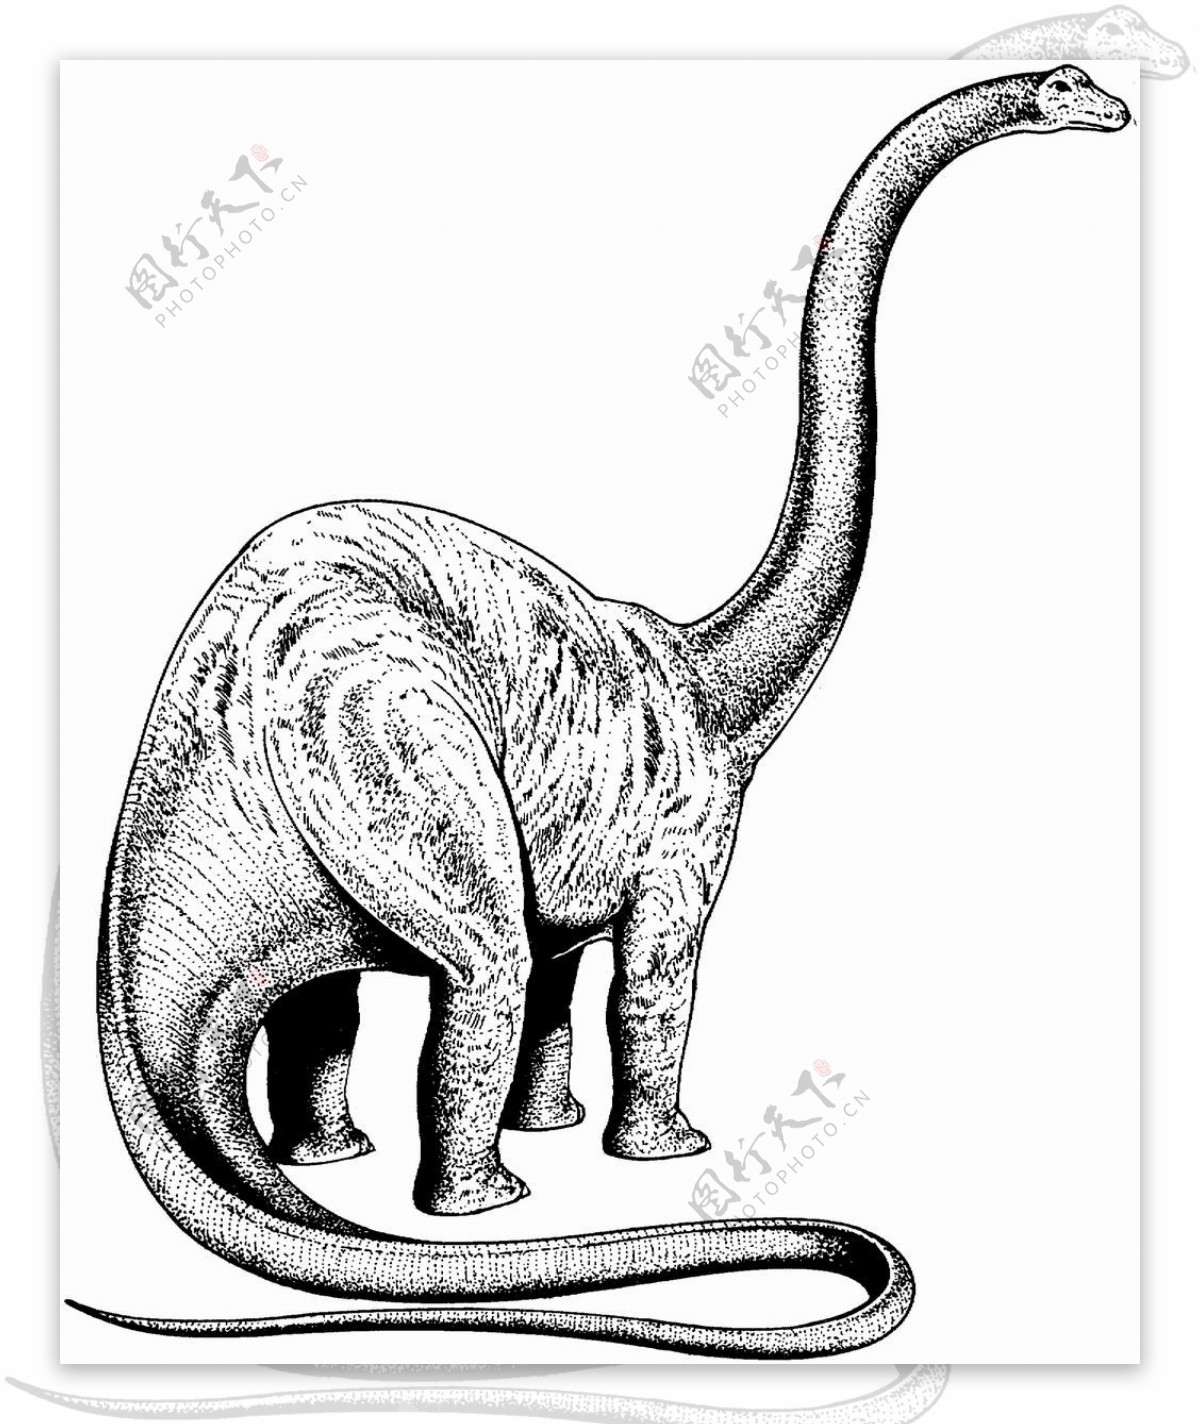 远古时代的动物恐龙手绘画动物素描